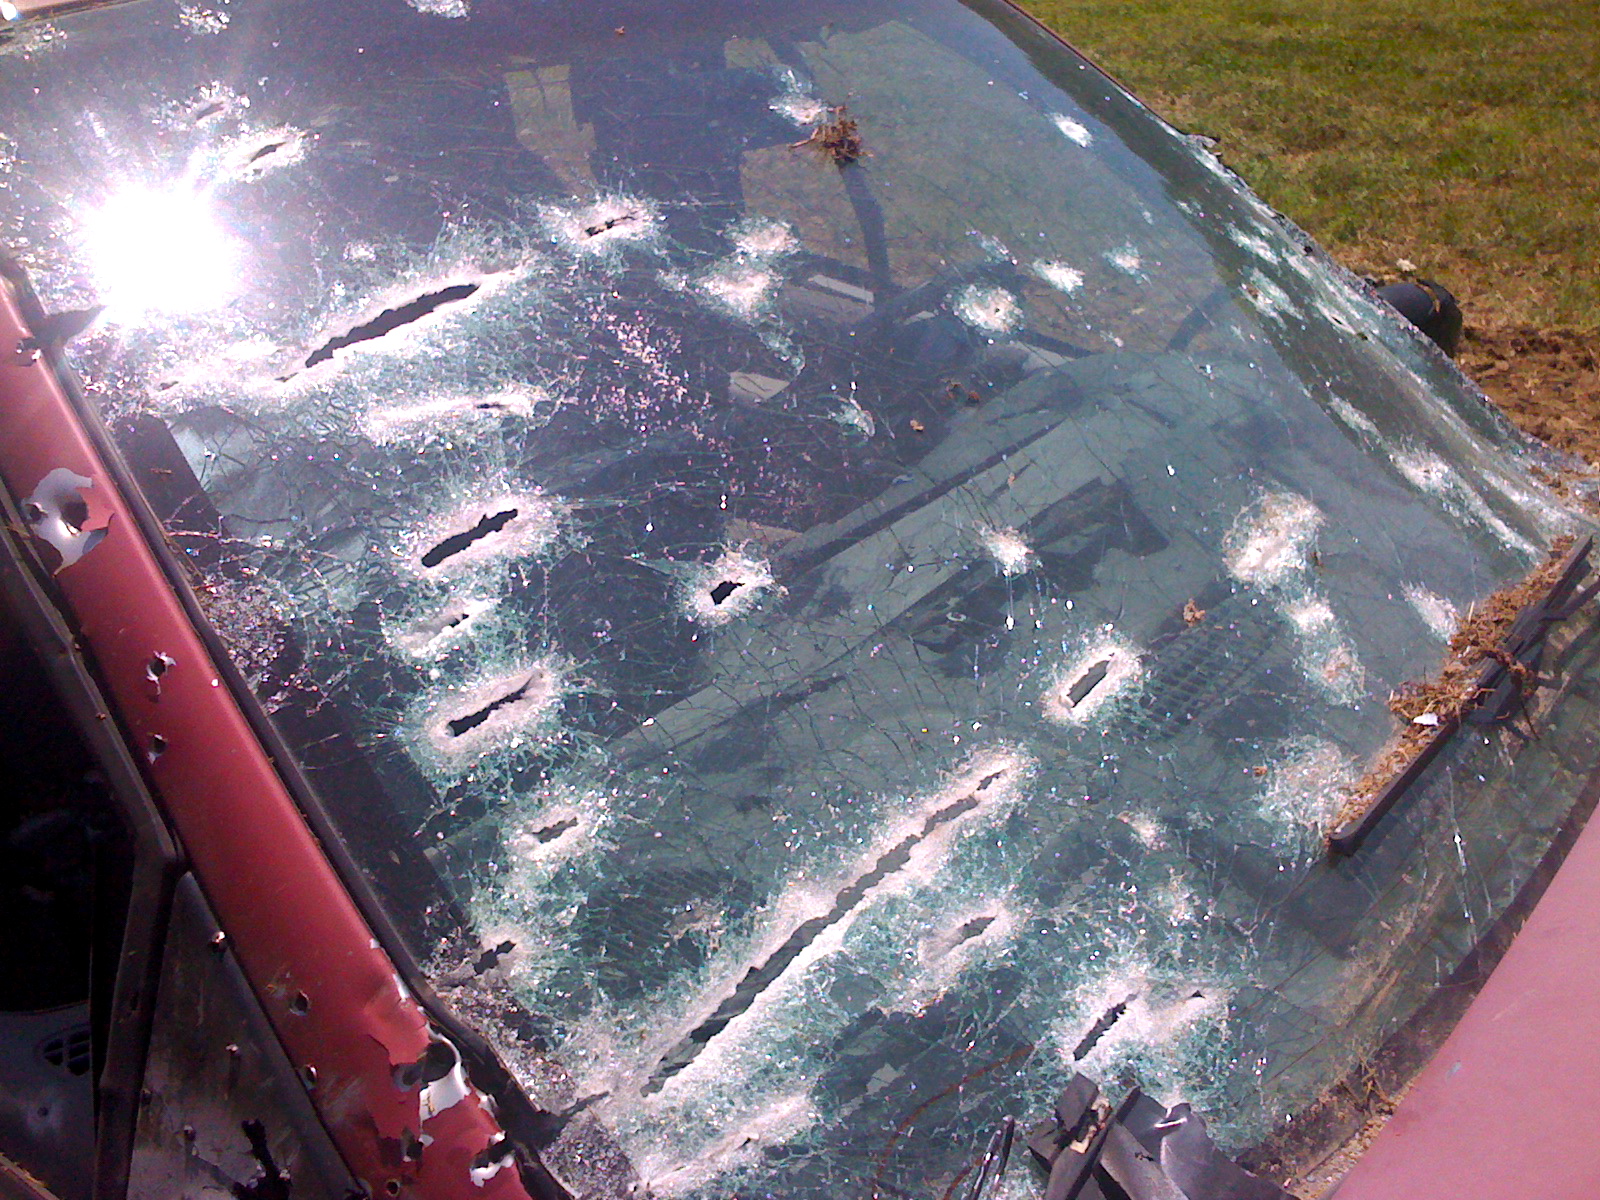 Machine gun rounds on car windshield